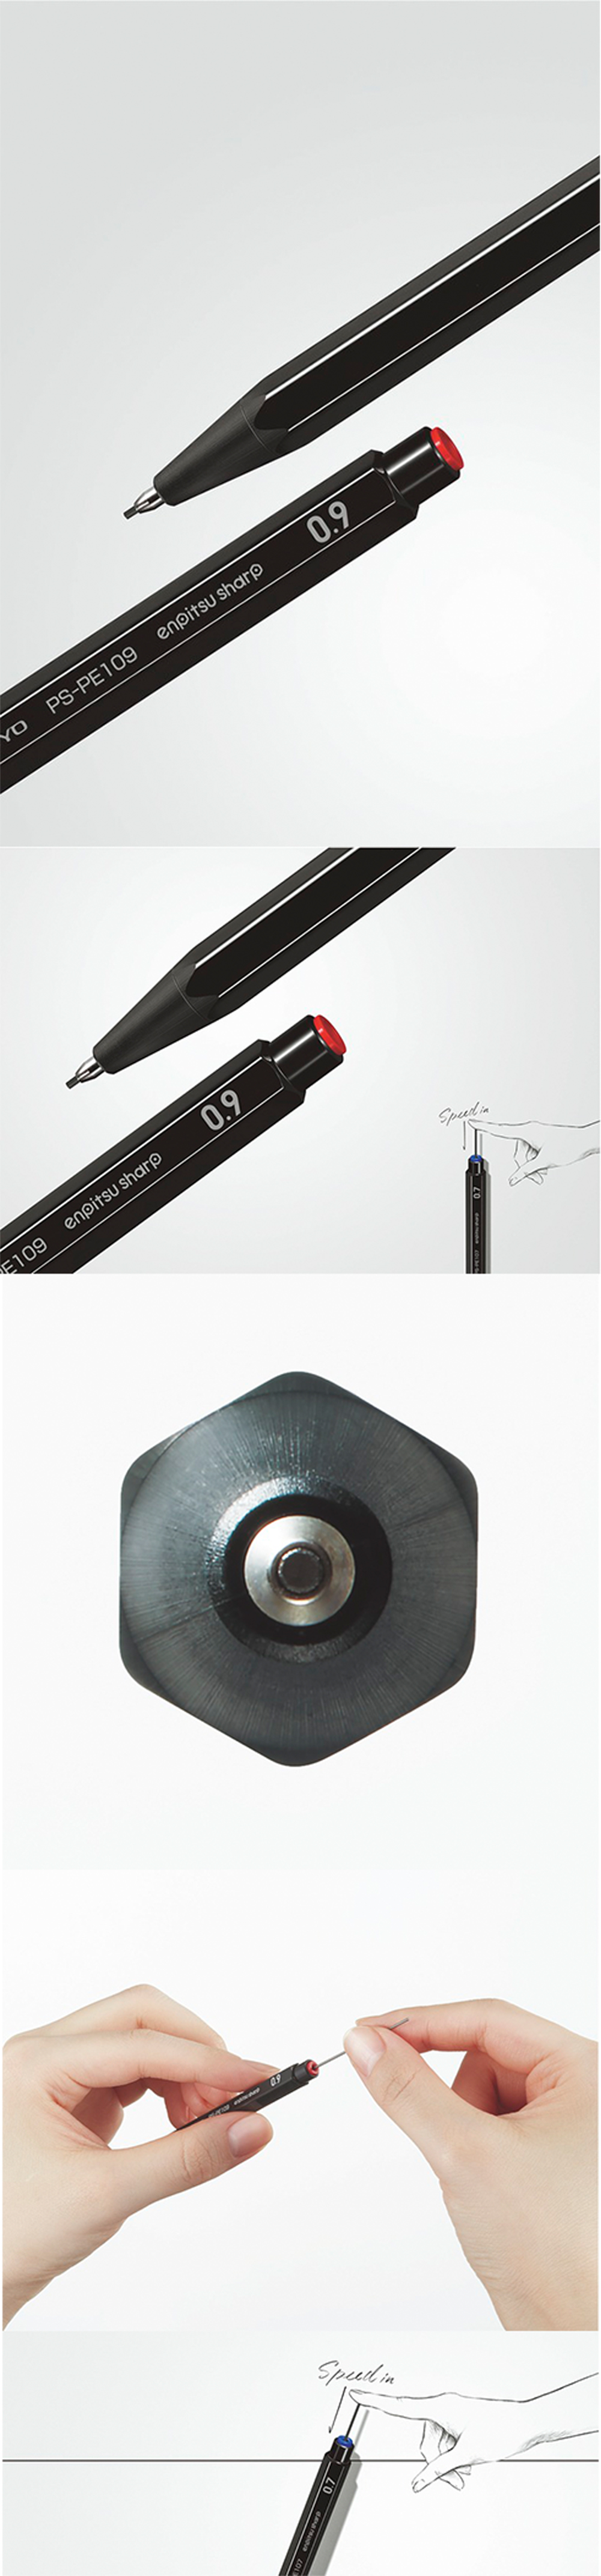 自動鉛筆 筆芯 kokuyo 自動鉛筆 六角 自動鉛筆